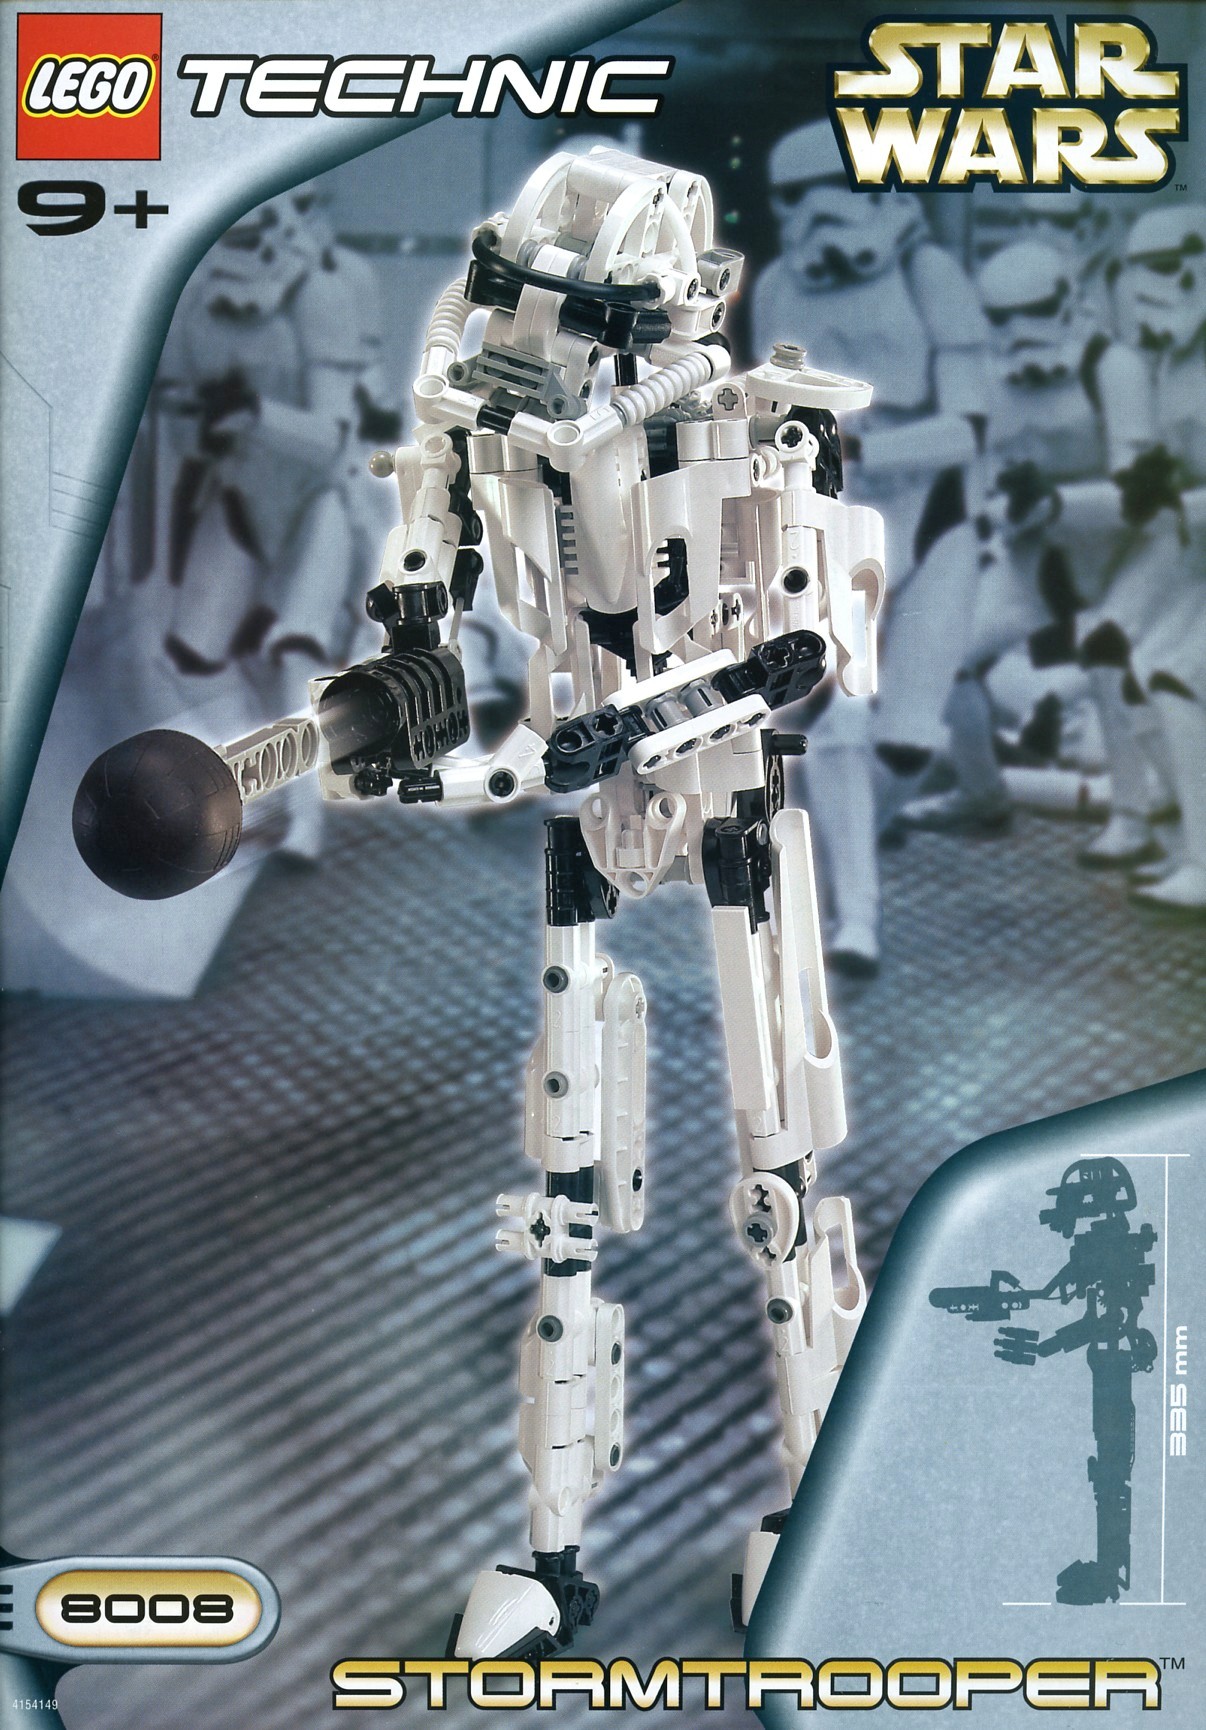 Star Wars | Technic | Brickset: LEGO and database